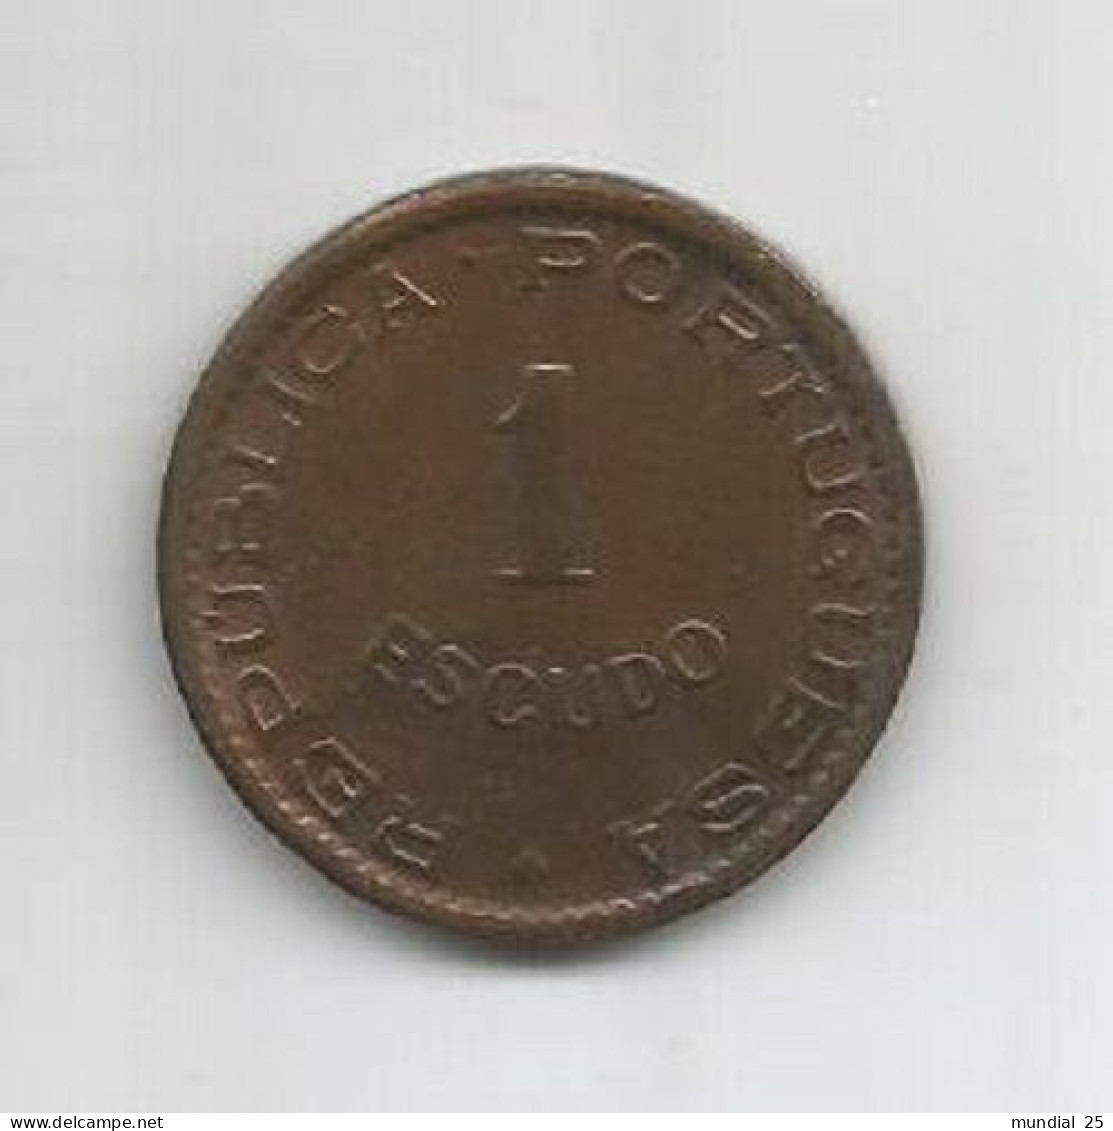 CAPE VERDE PORTUGAL 1$00 ESCUDO 1953 - Capo Verde